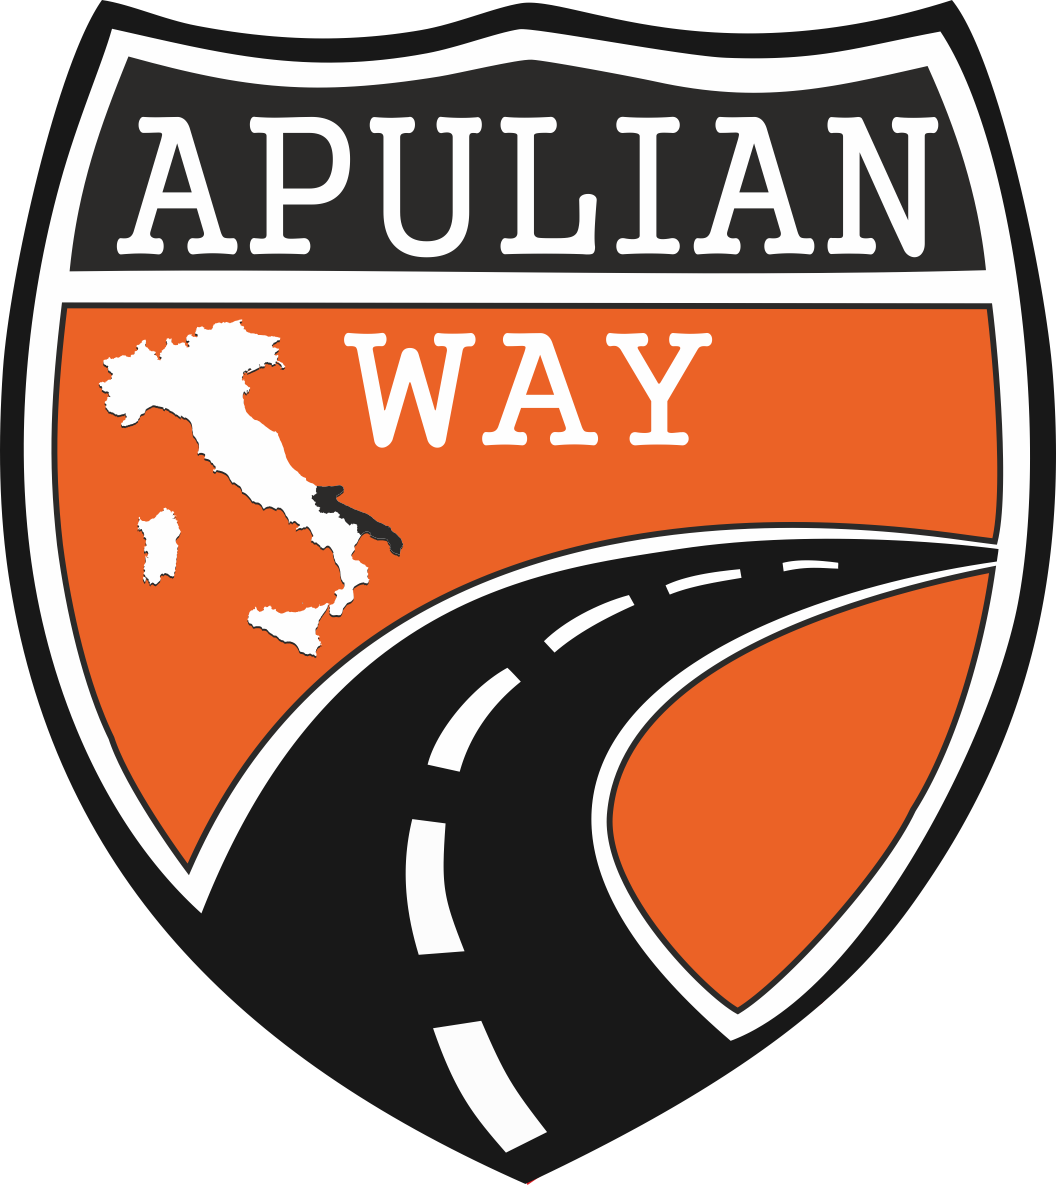 Apulian Way